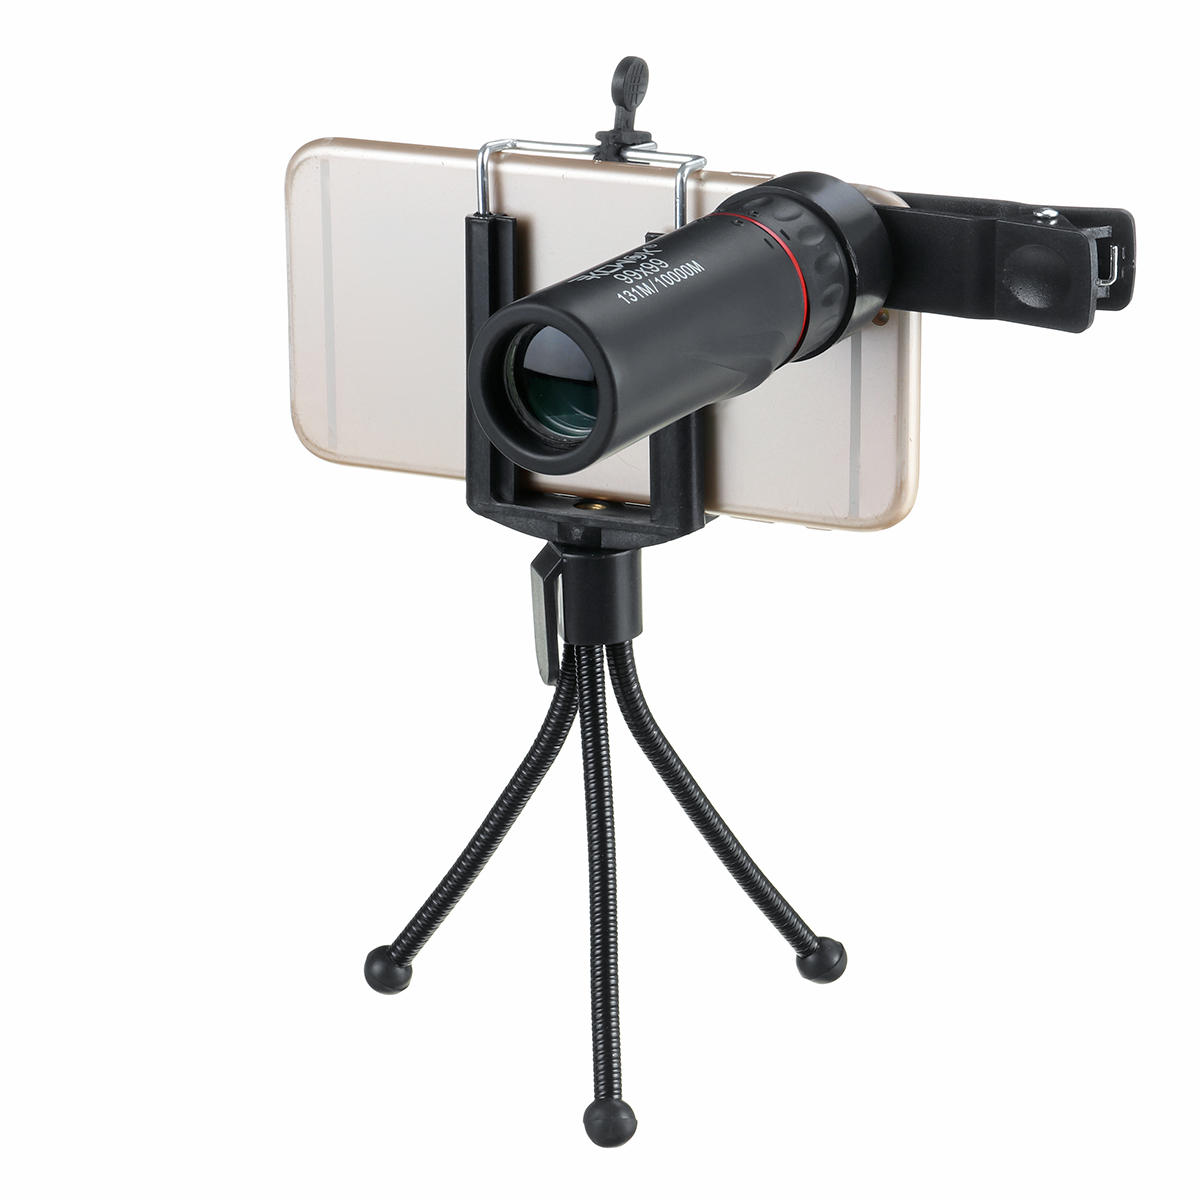 Přenosný 99x99 HD BAK4 optický denní a noční vidění monokulární outdoorový táborový, turistický a lovecký dalekohled.